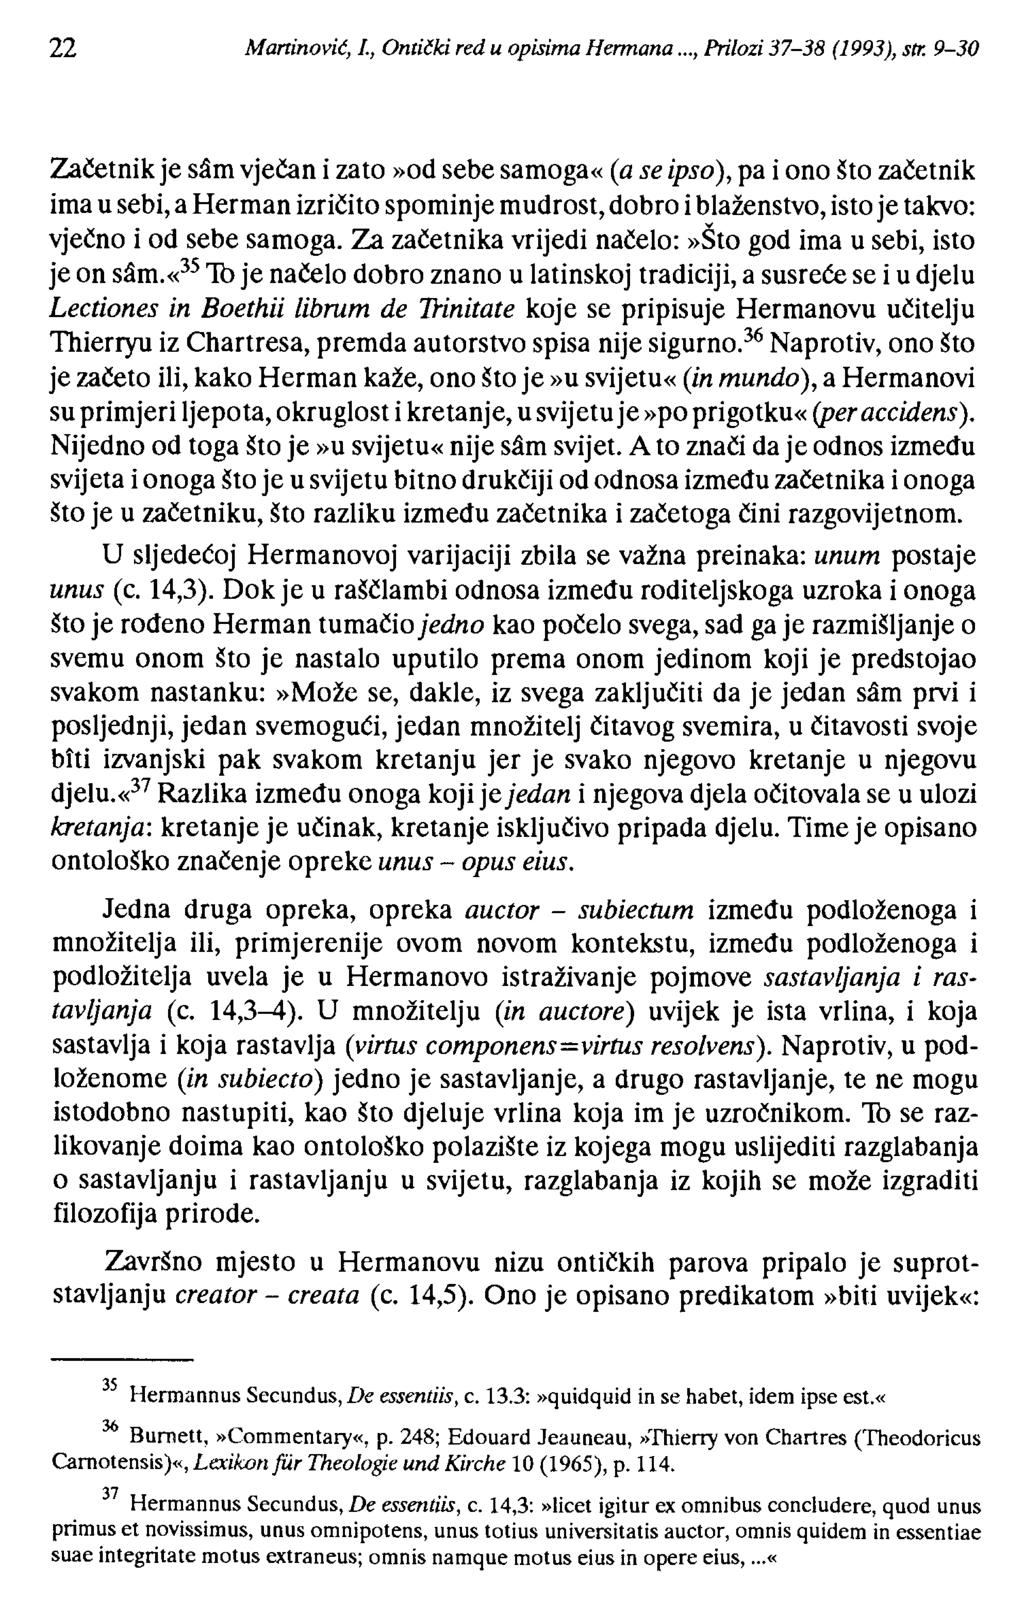 22 Maninović, J., Ontički red u opisima Hermana..., Prilozi 37-38 (1993), str.